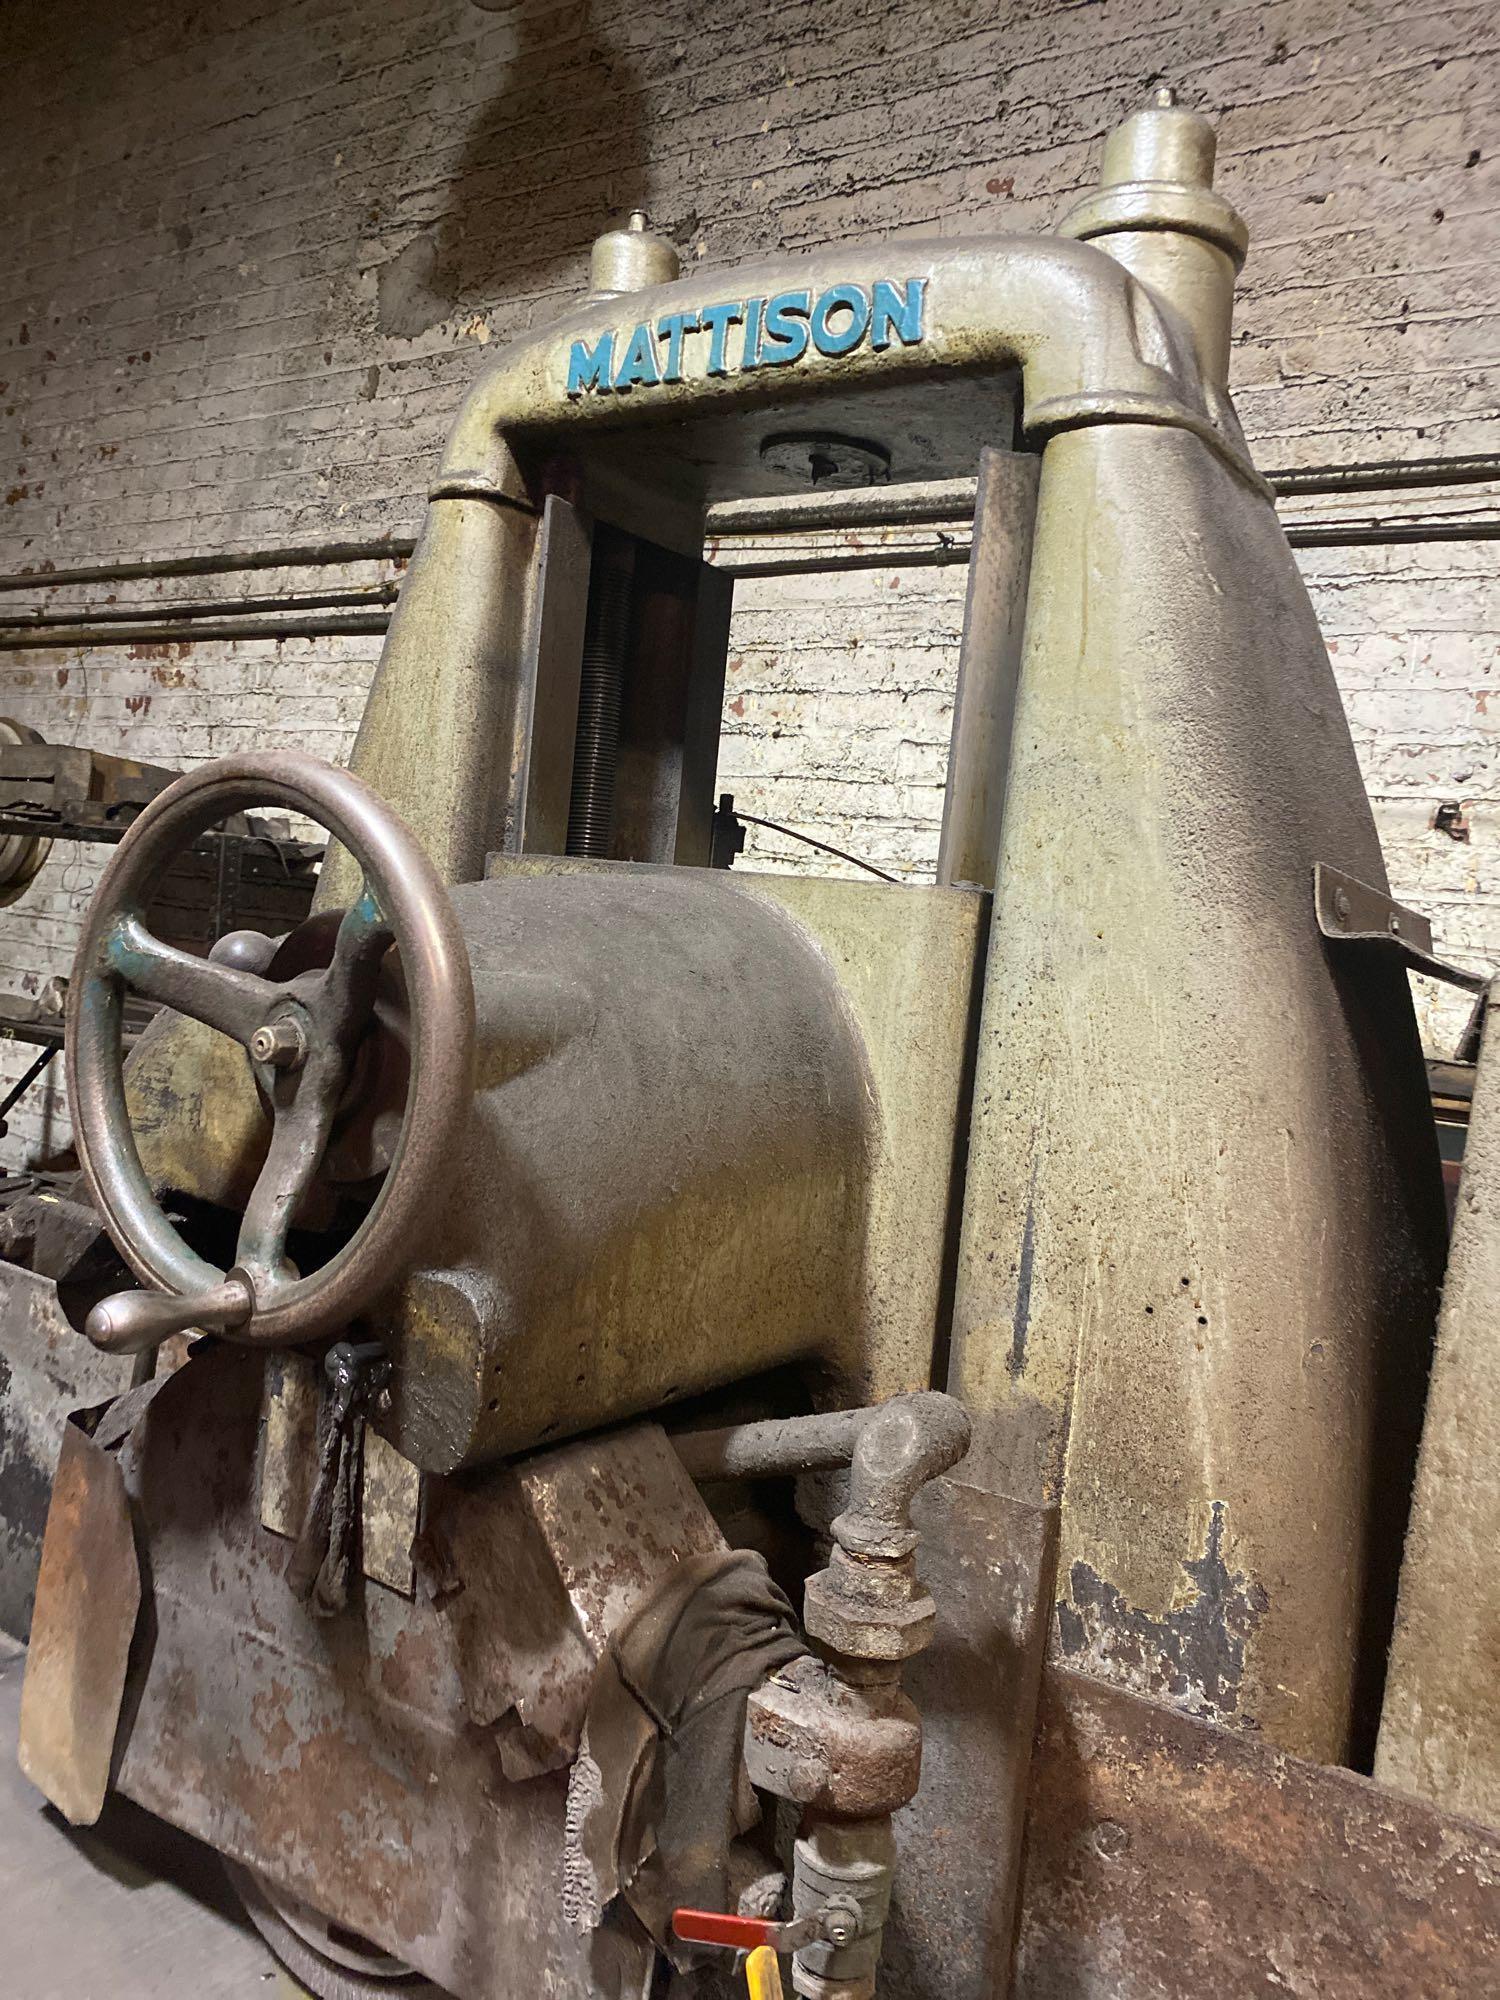 Mattison industrial grinder